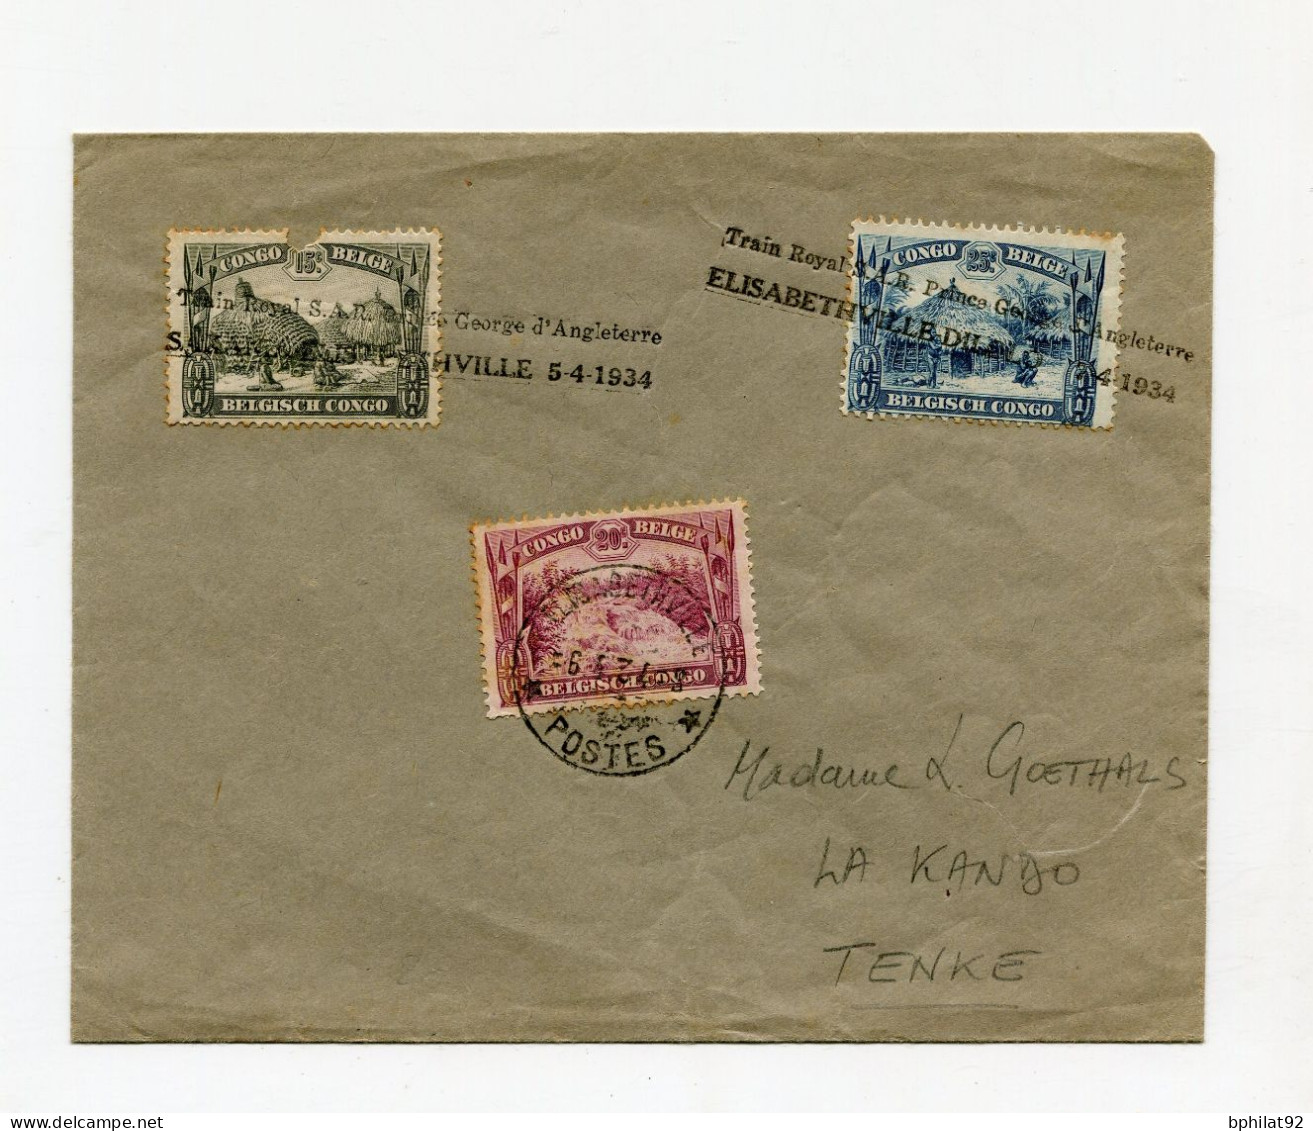 !!! CONGO BELGE, LETTRE POUR LA KANDO AVEC CACHET TRAIN ROYAL DE SAR PRINCE GEORGES D'ANGLETERRE DE 1934 - Covers & Documents